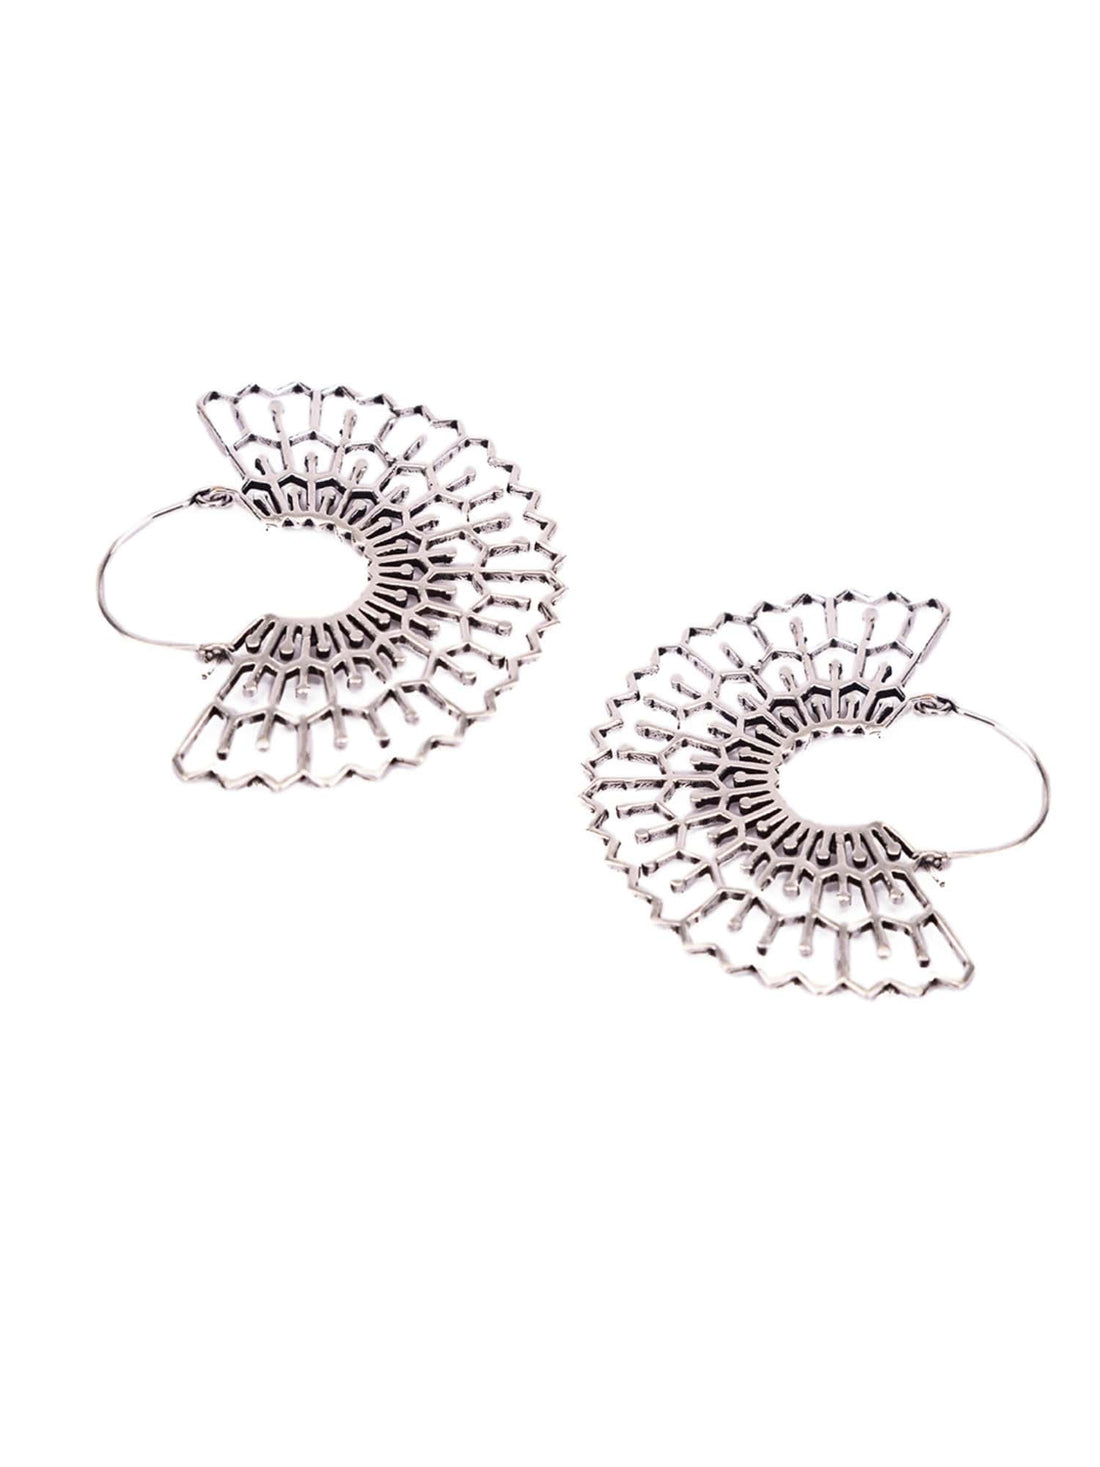 Festive Wear Chandbaalis Earrings - Traditional Silver-Plated Brass Earrings By Studio One Love